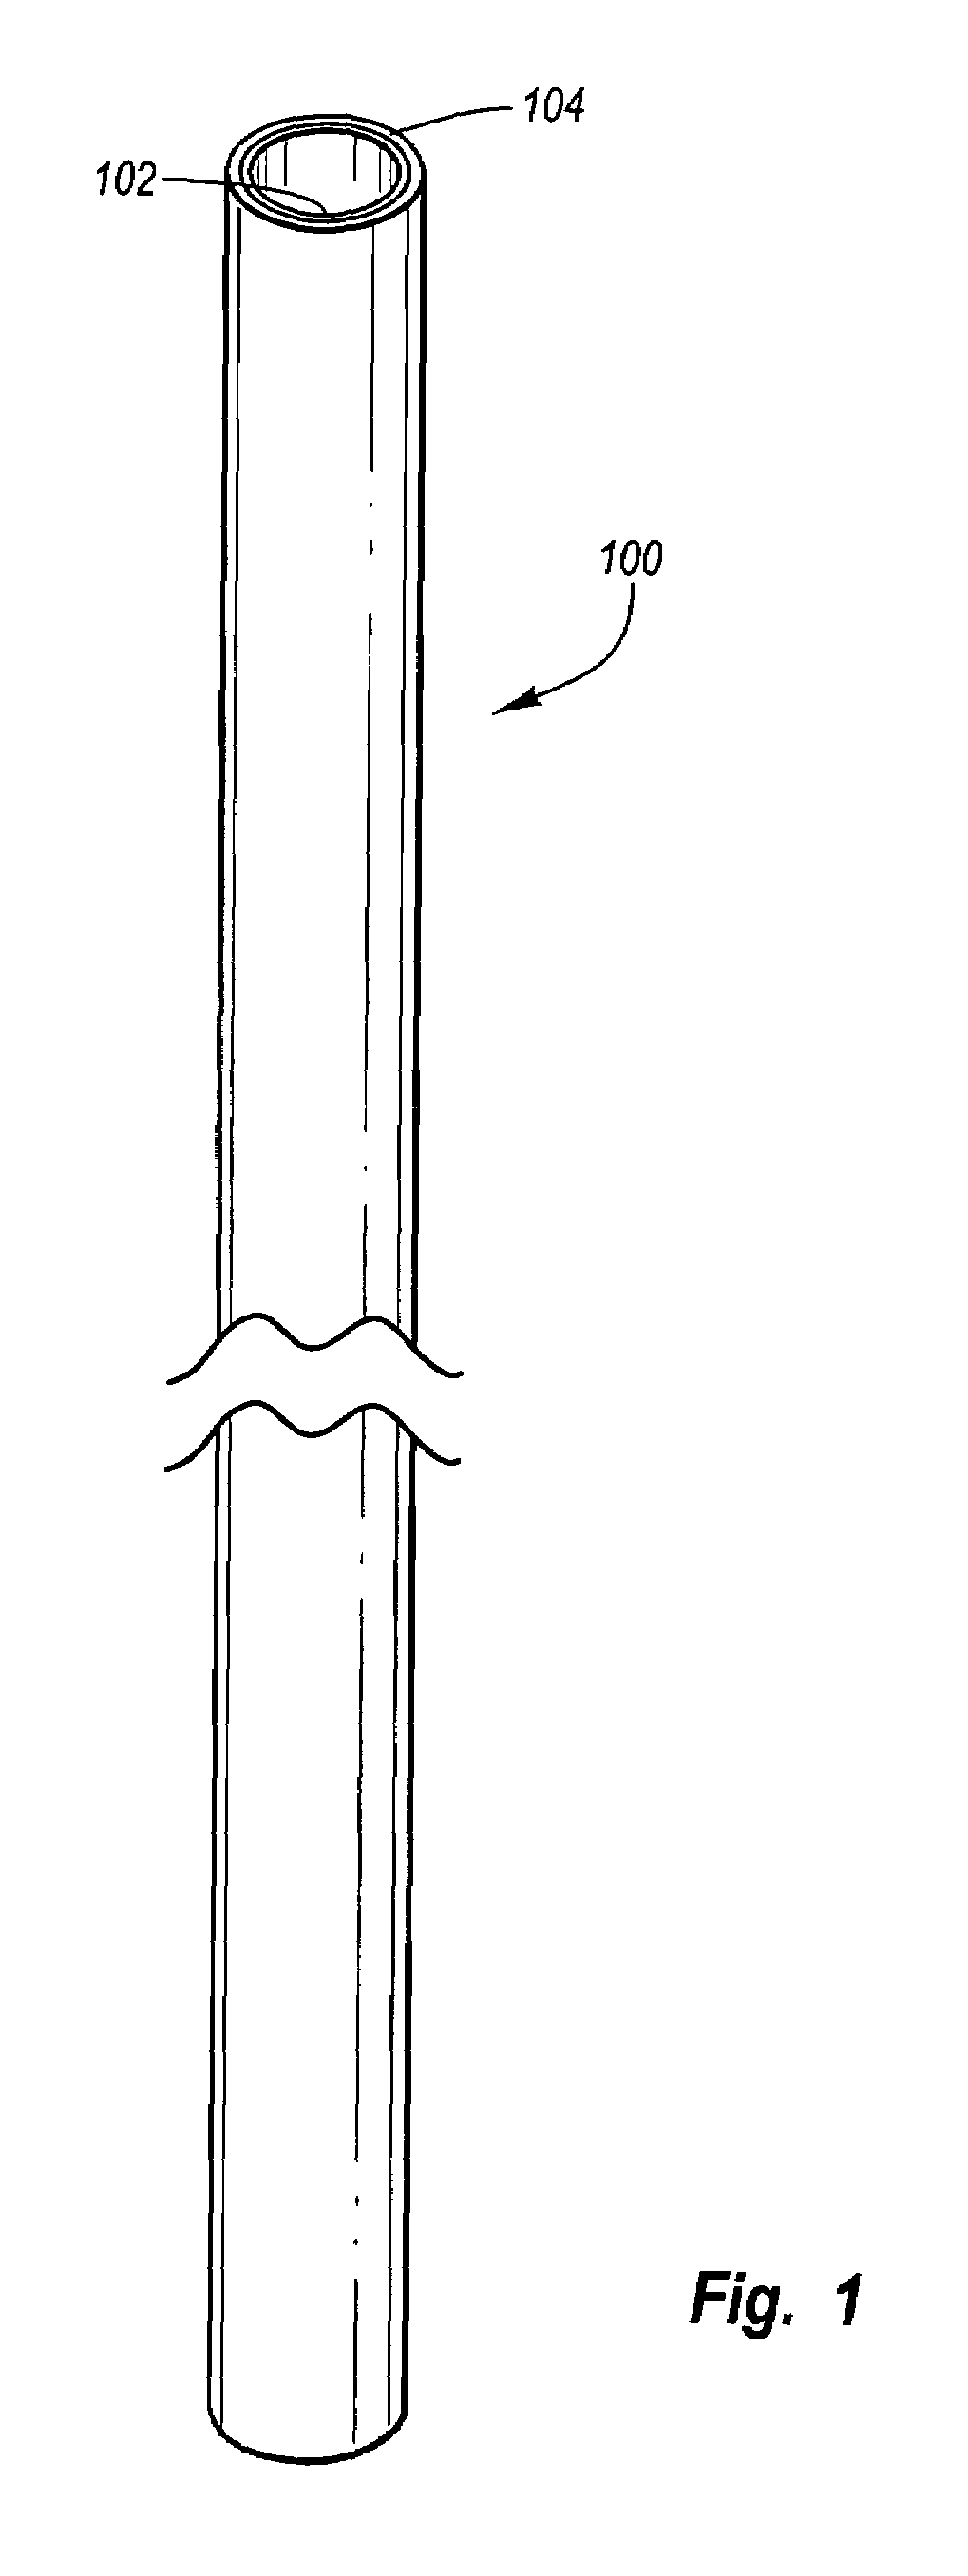 Metallic arrow shaft with fiber reinforced polymer core